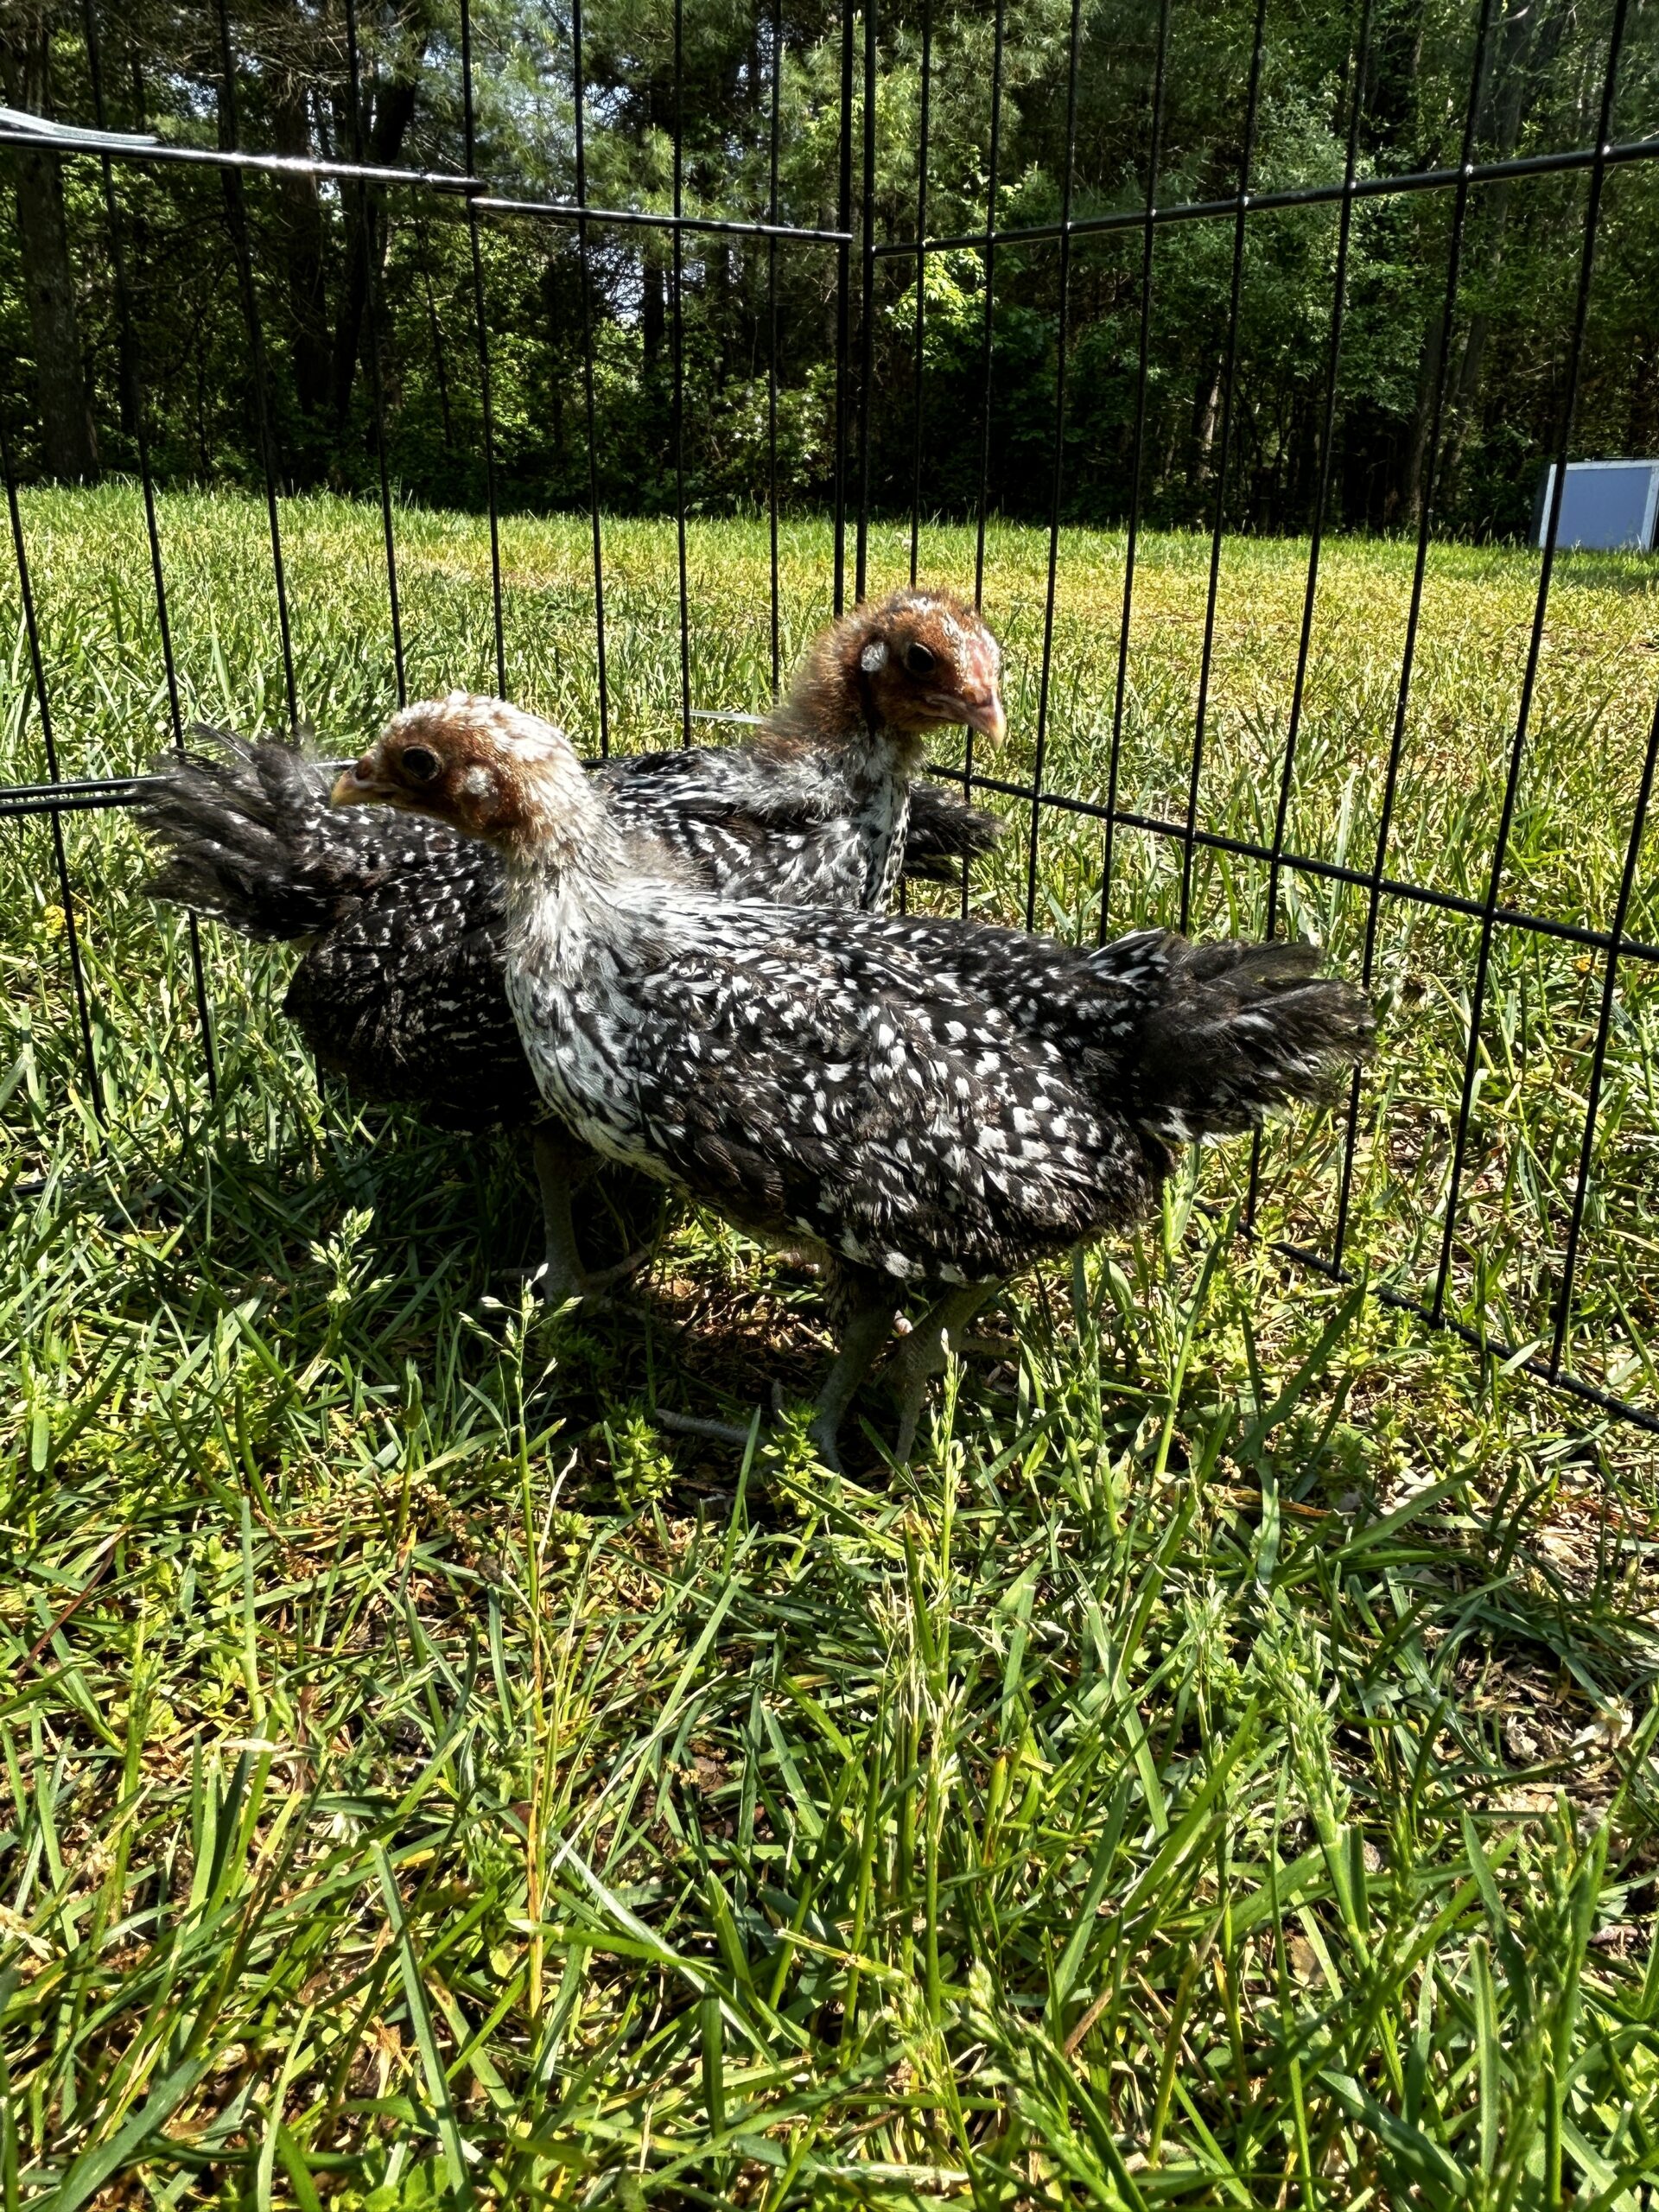 baby Deathlayer chicks